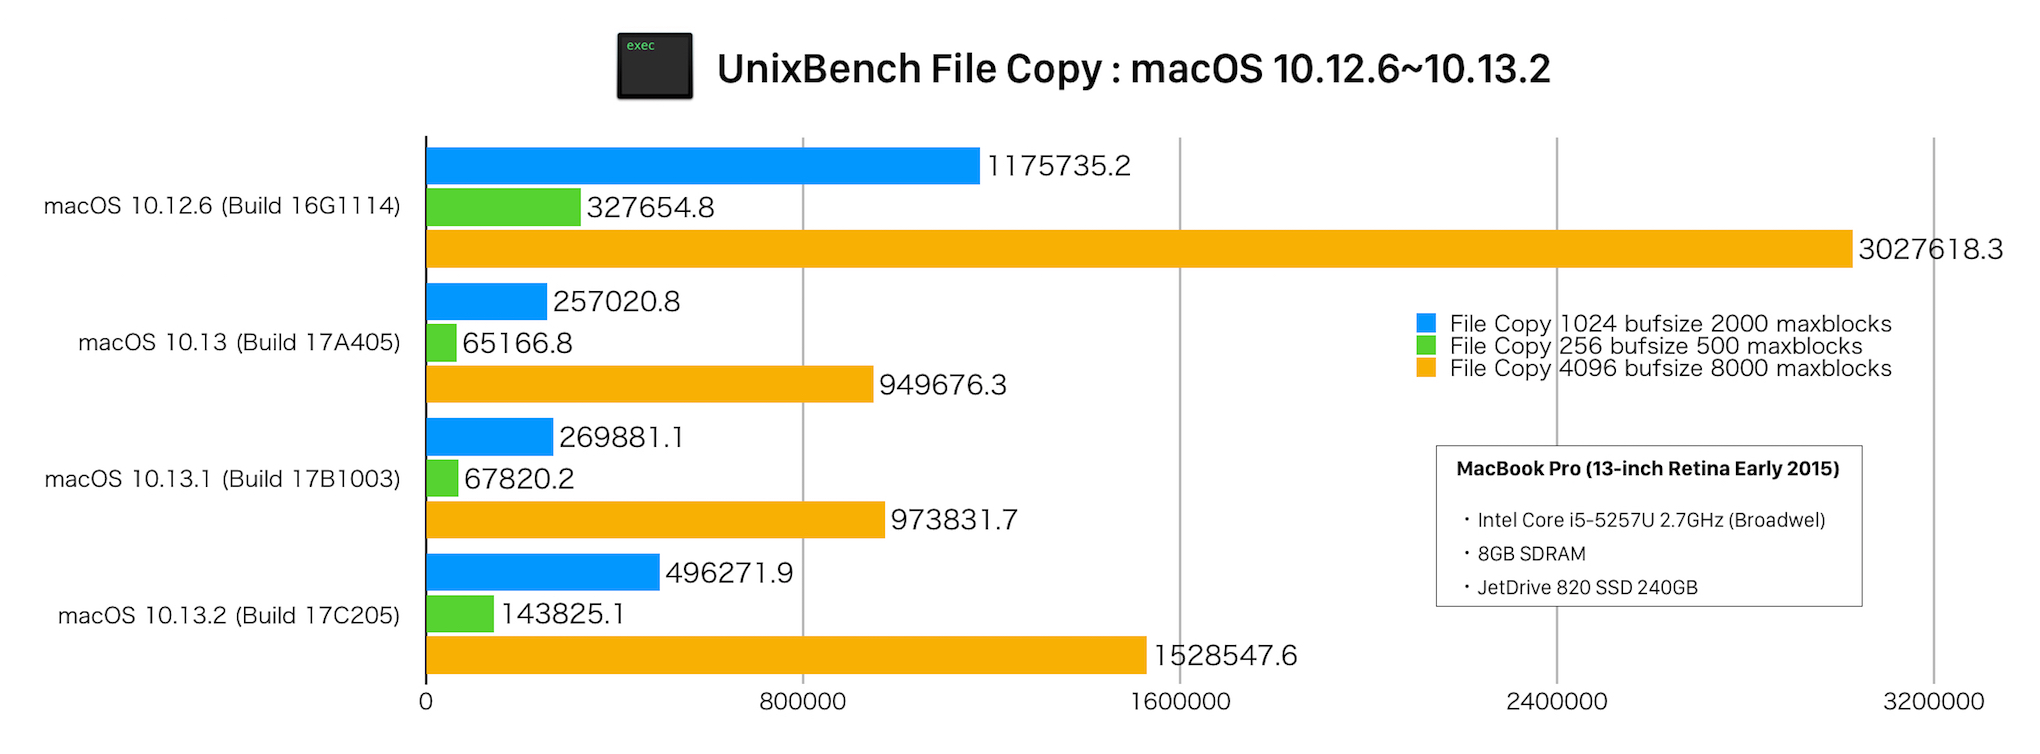 UnixBenchのCopy File